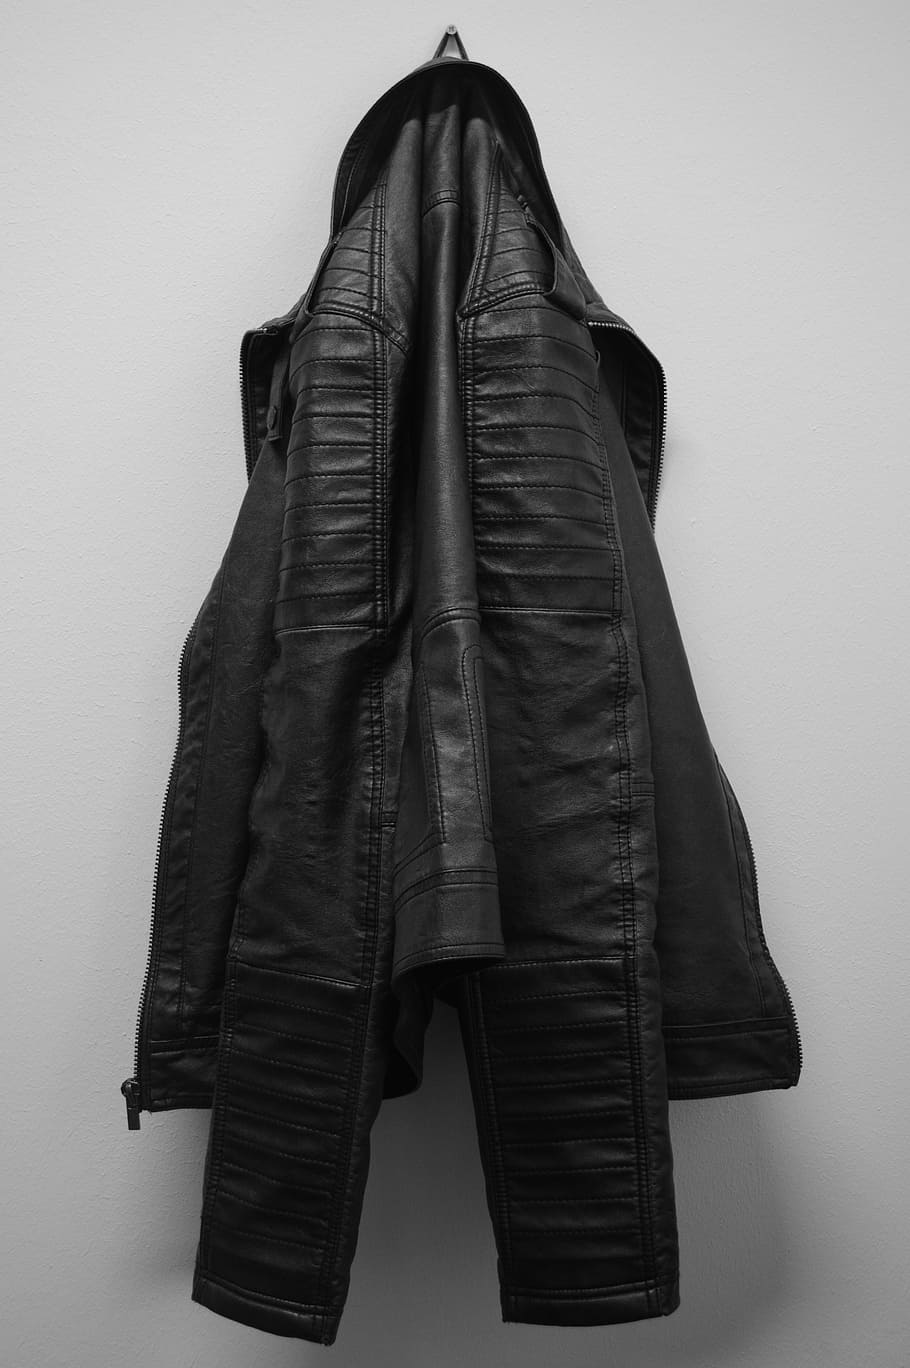 black leather jacket hanging on white wall, leather coat, clothing